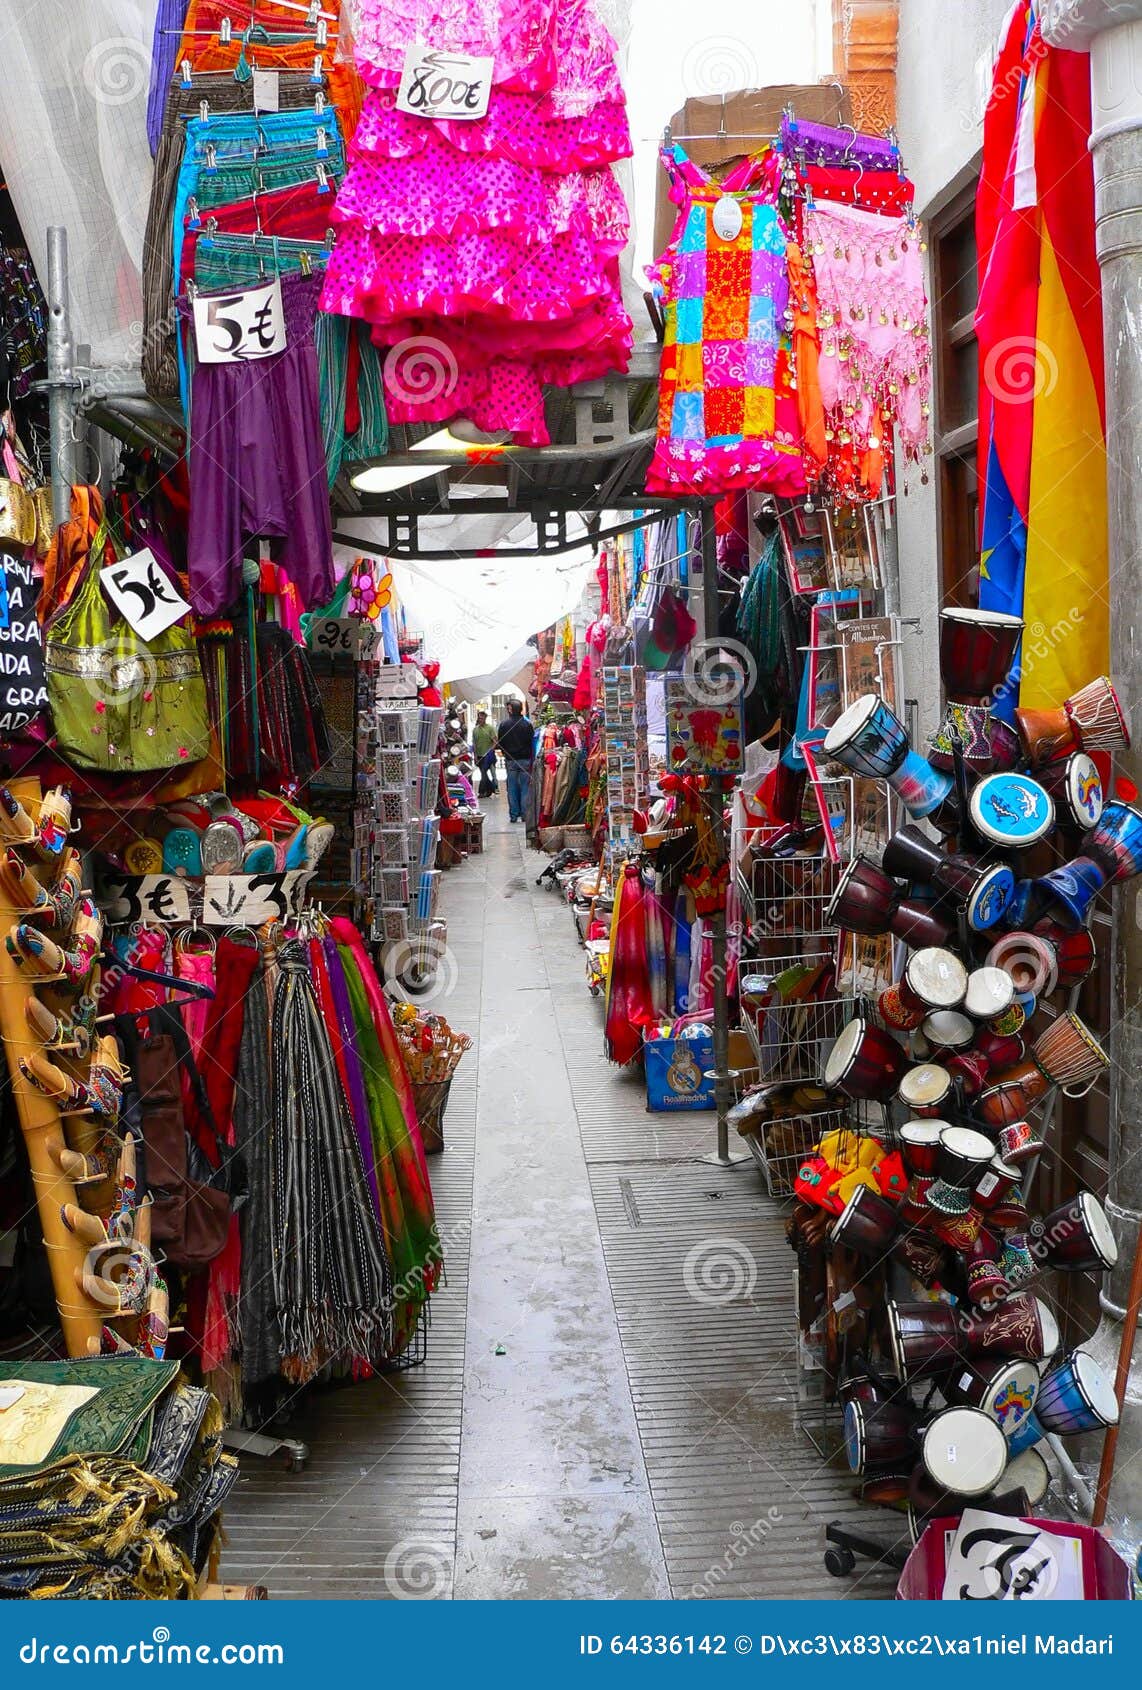 color cavalcade -arcade of shops in granada